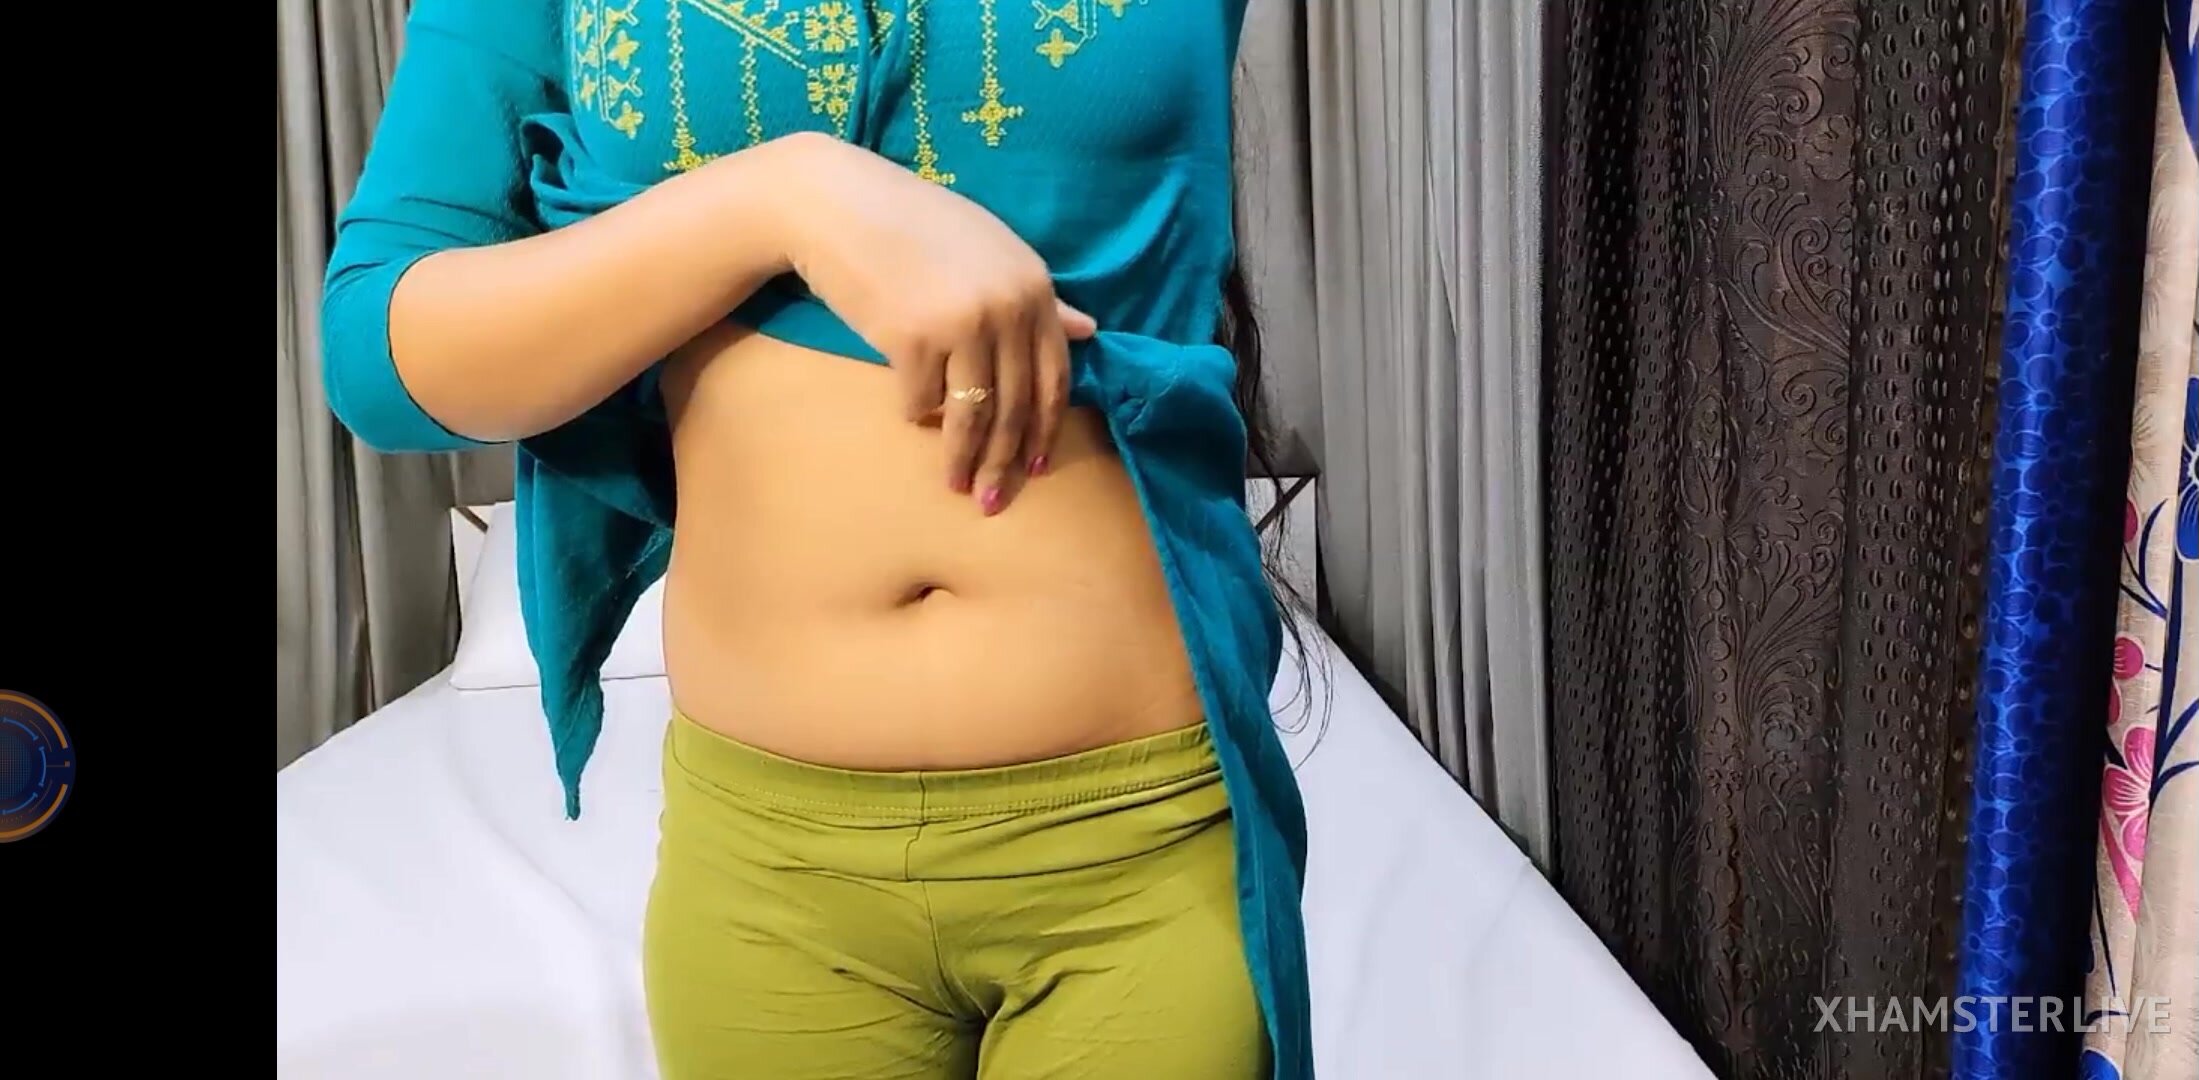 Rani 3x Video - Live Cam SexTeen Model Desi Priya rani 2 video